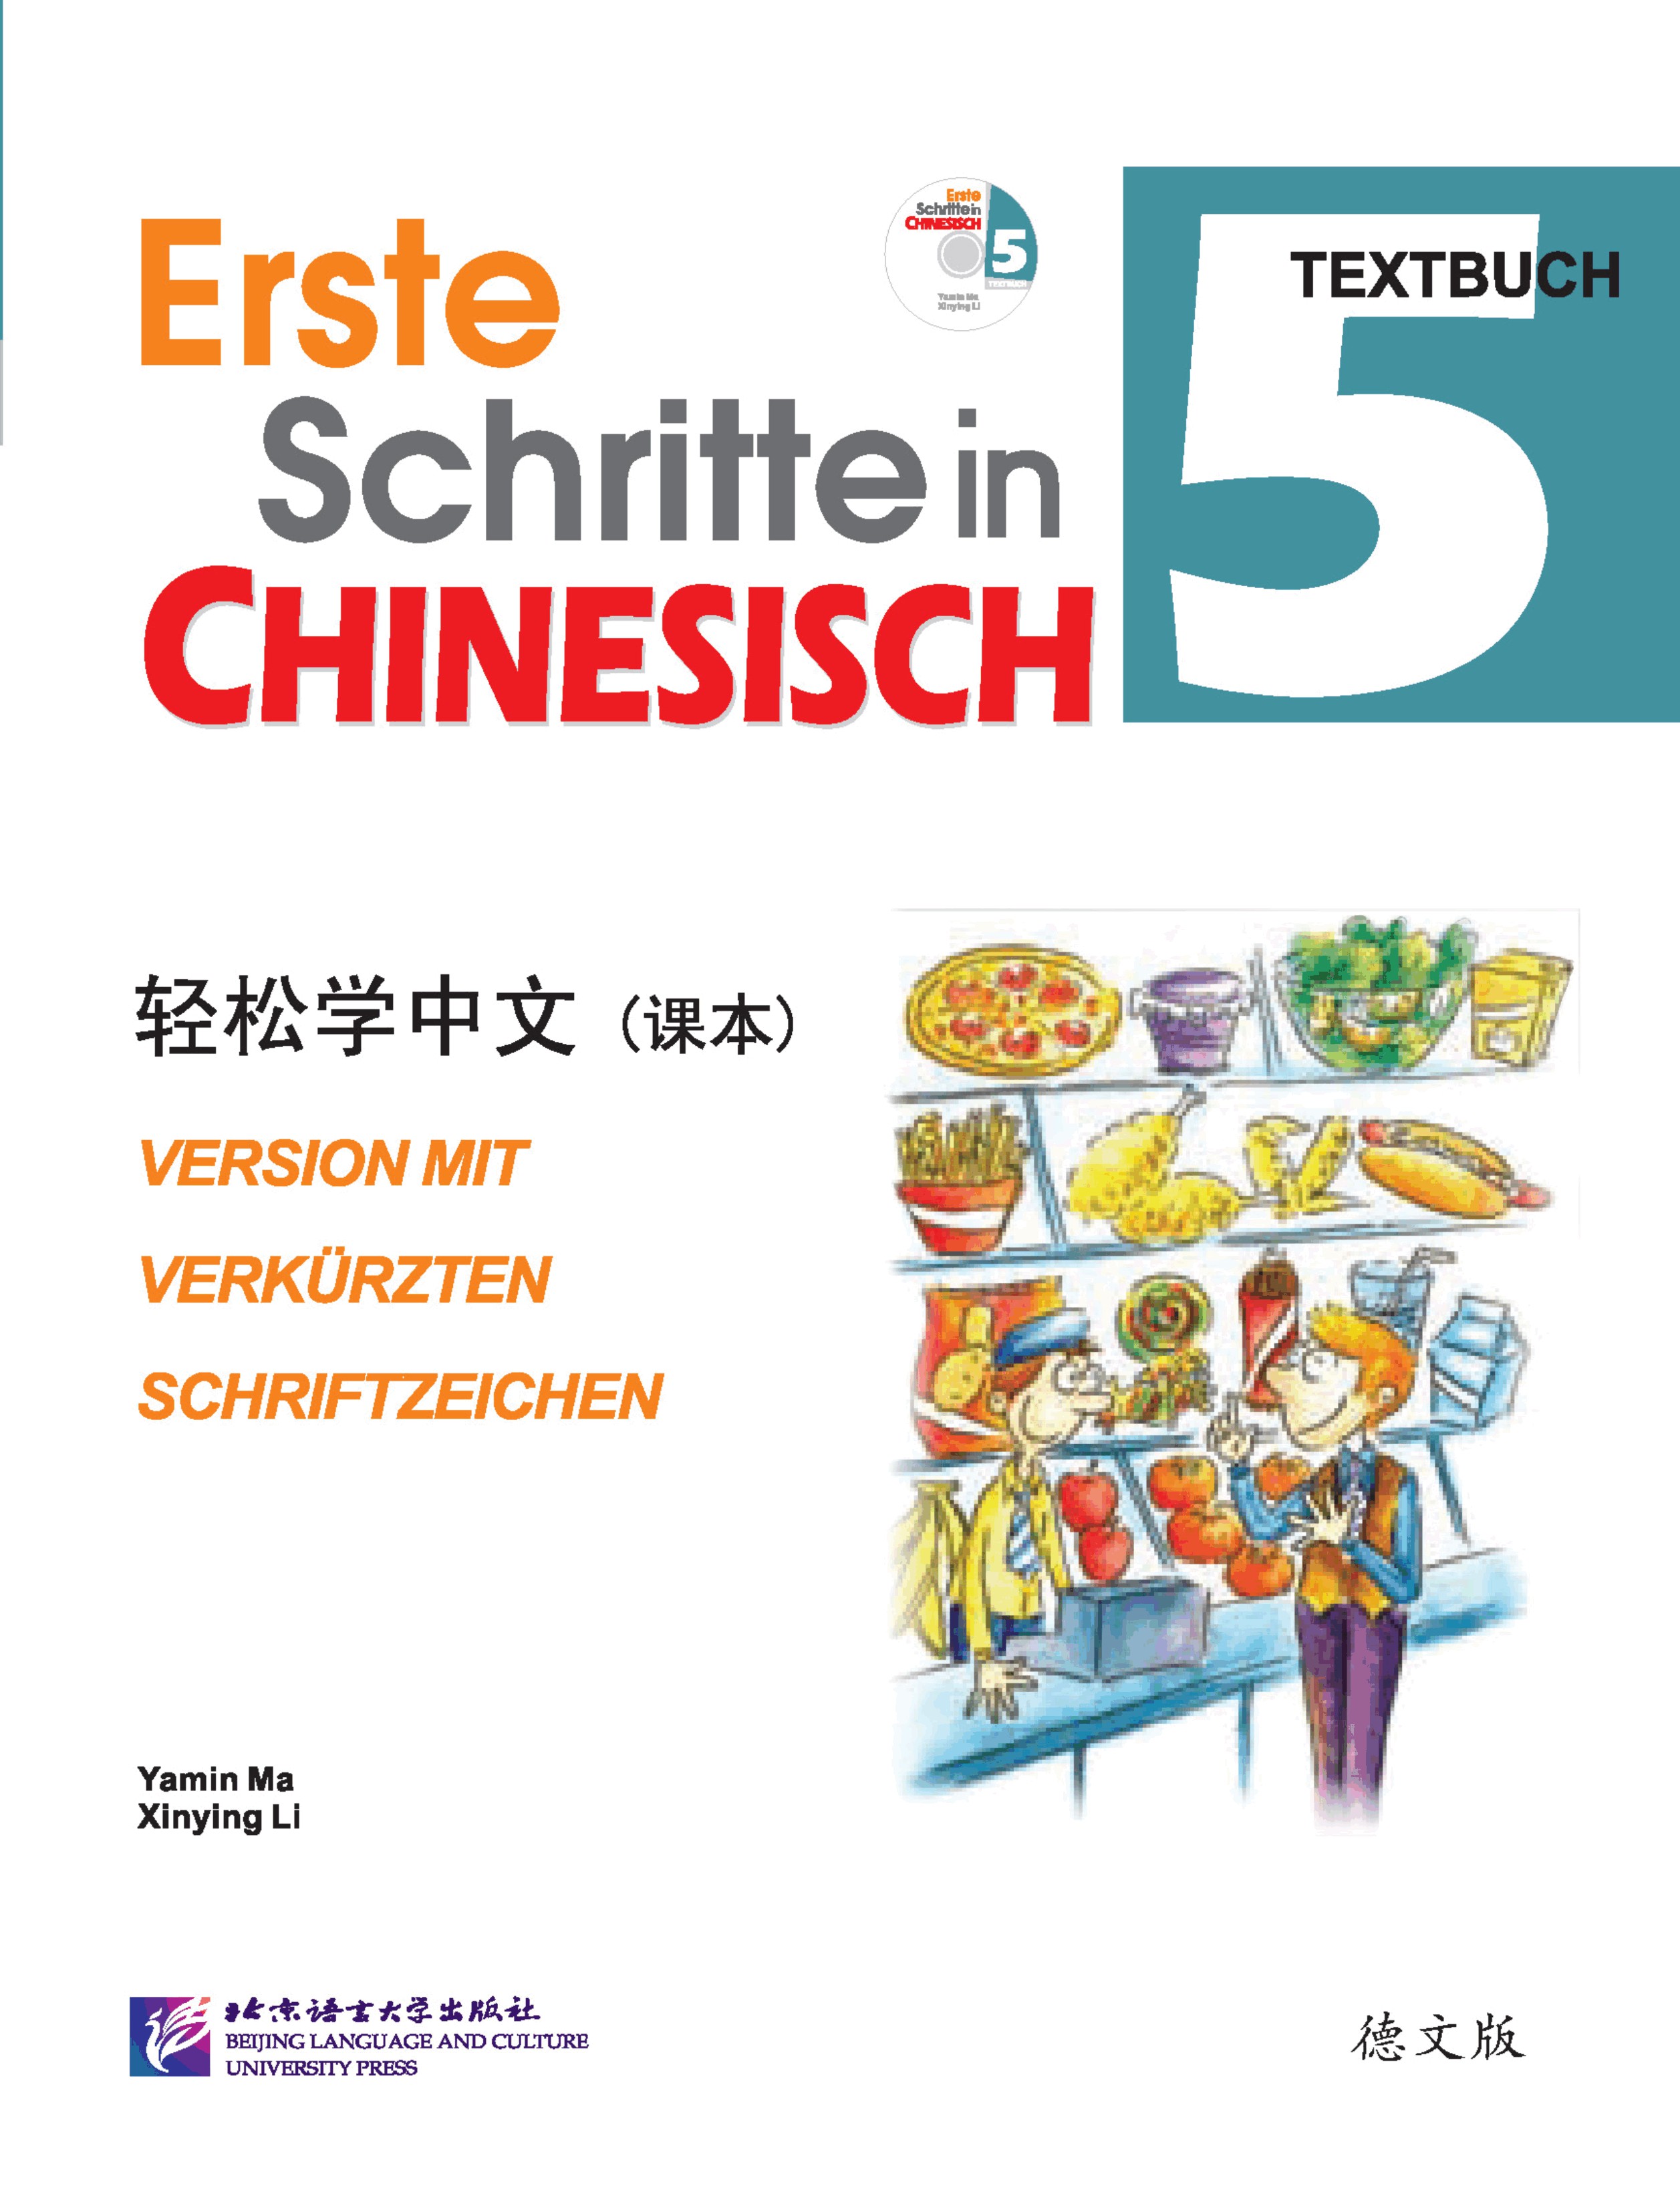 Erste Schritte in Chinesisch (Deutsche Sprachversion) Band 5 - Textbuch (+ 1 CD)<br>ISBN: 978-7-5619-4432-5, 9787561944325